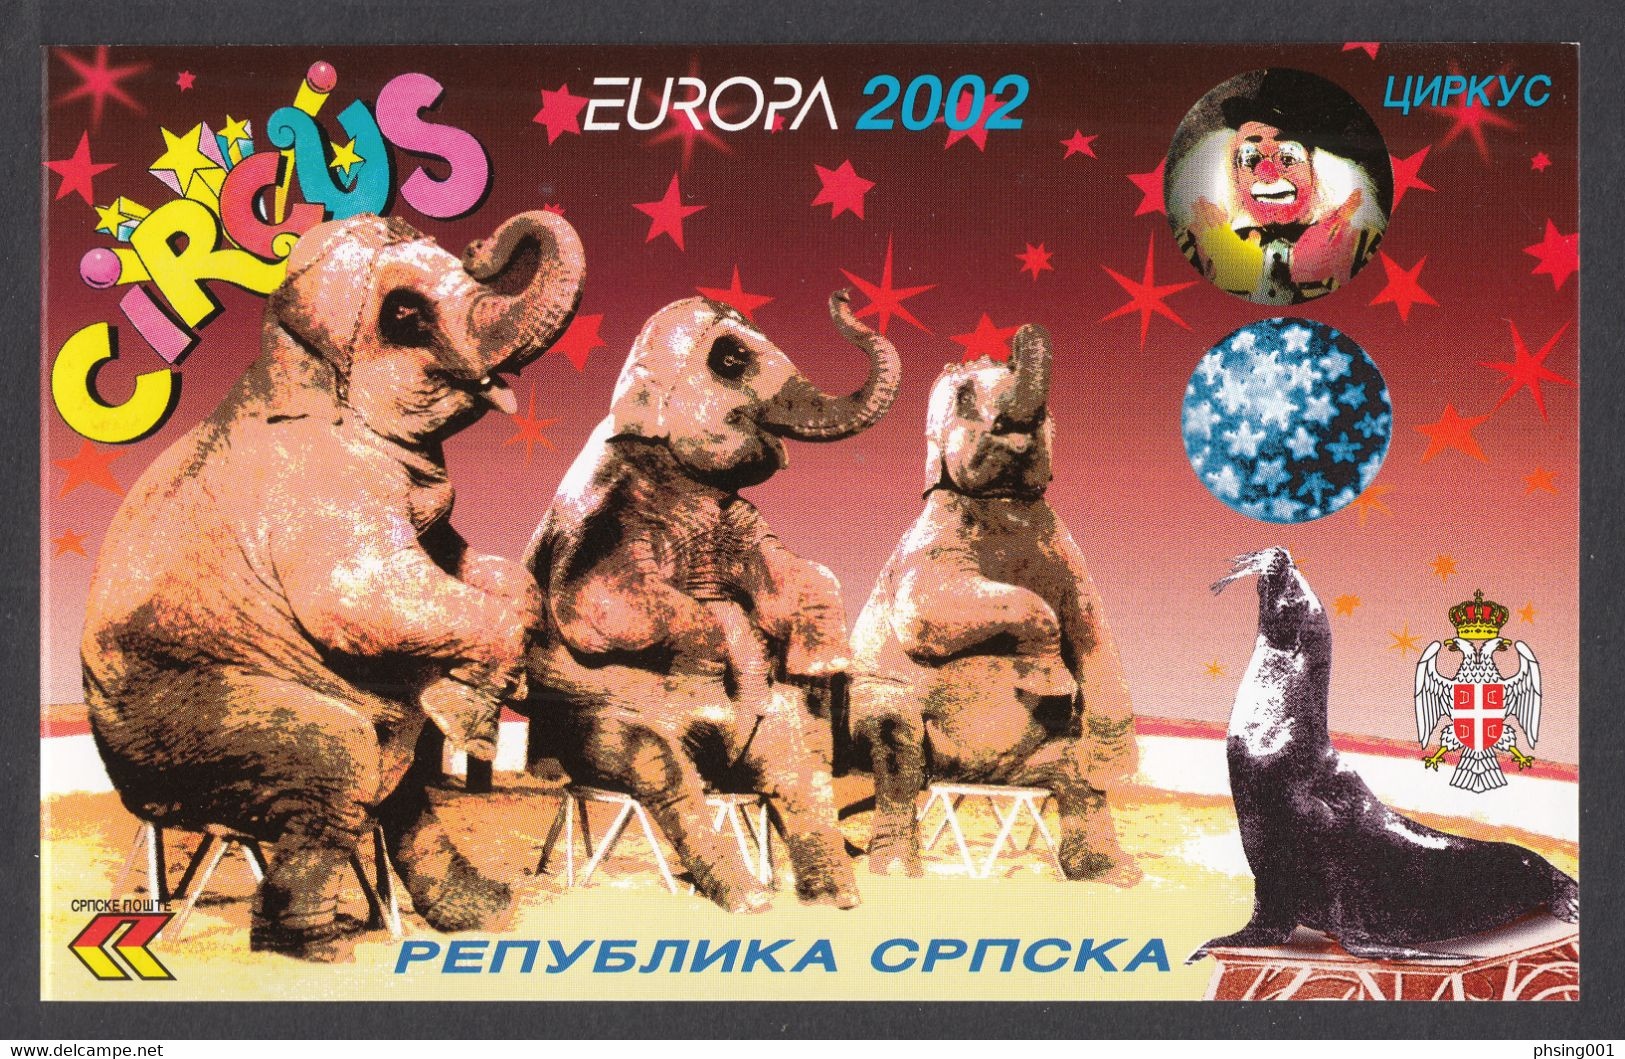 Bosnia Serbia 2002 Europa CEPT Circus Zirkus Cirque Elephants Horses Fauna Clown Music Instrument, Booklet MNH - Bosnie-Herzegovine